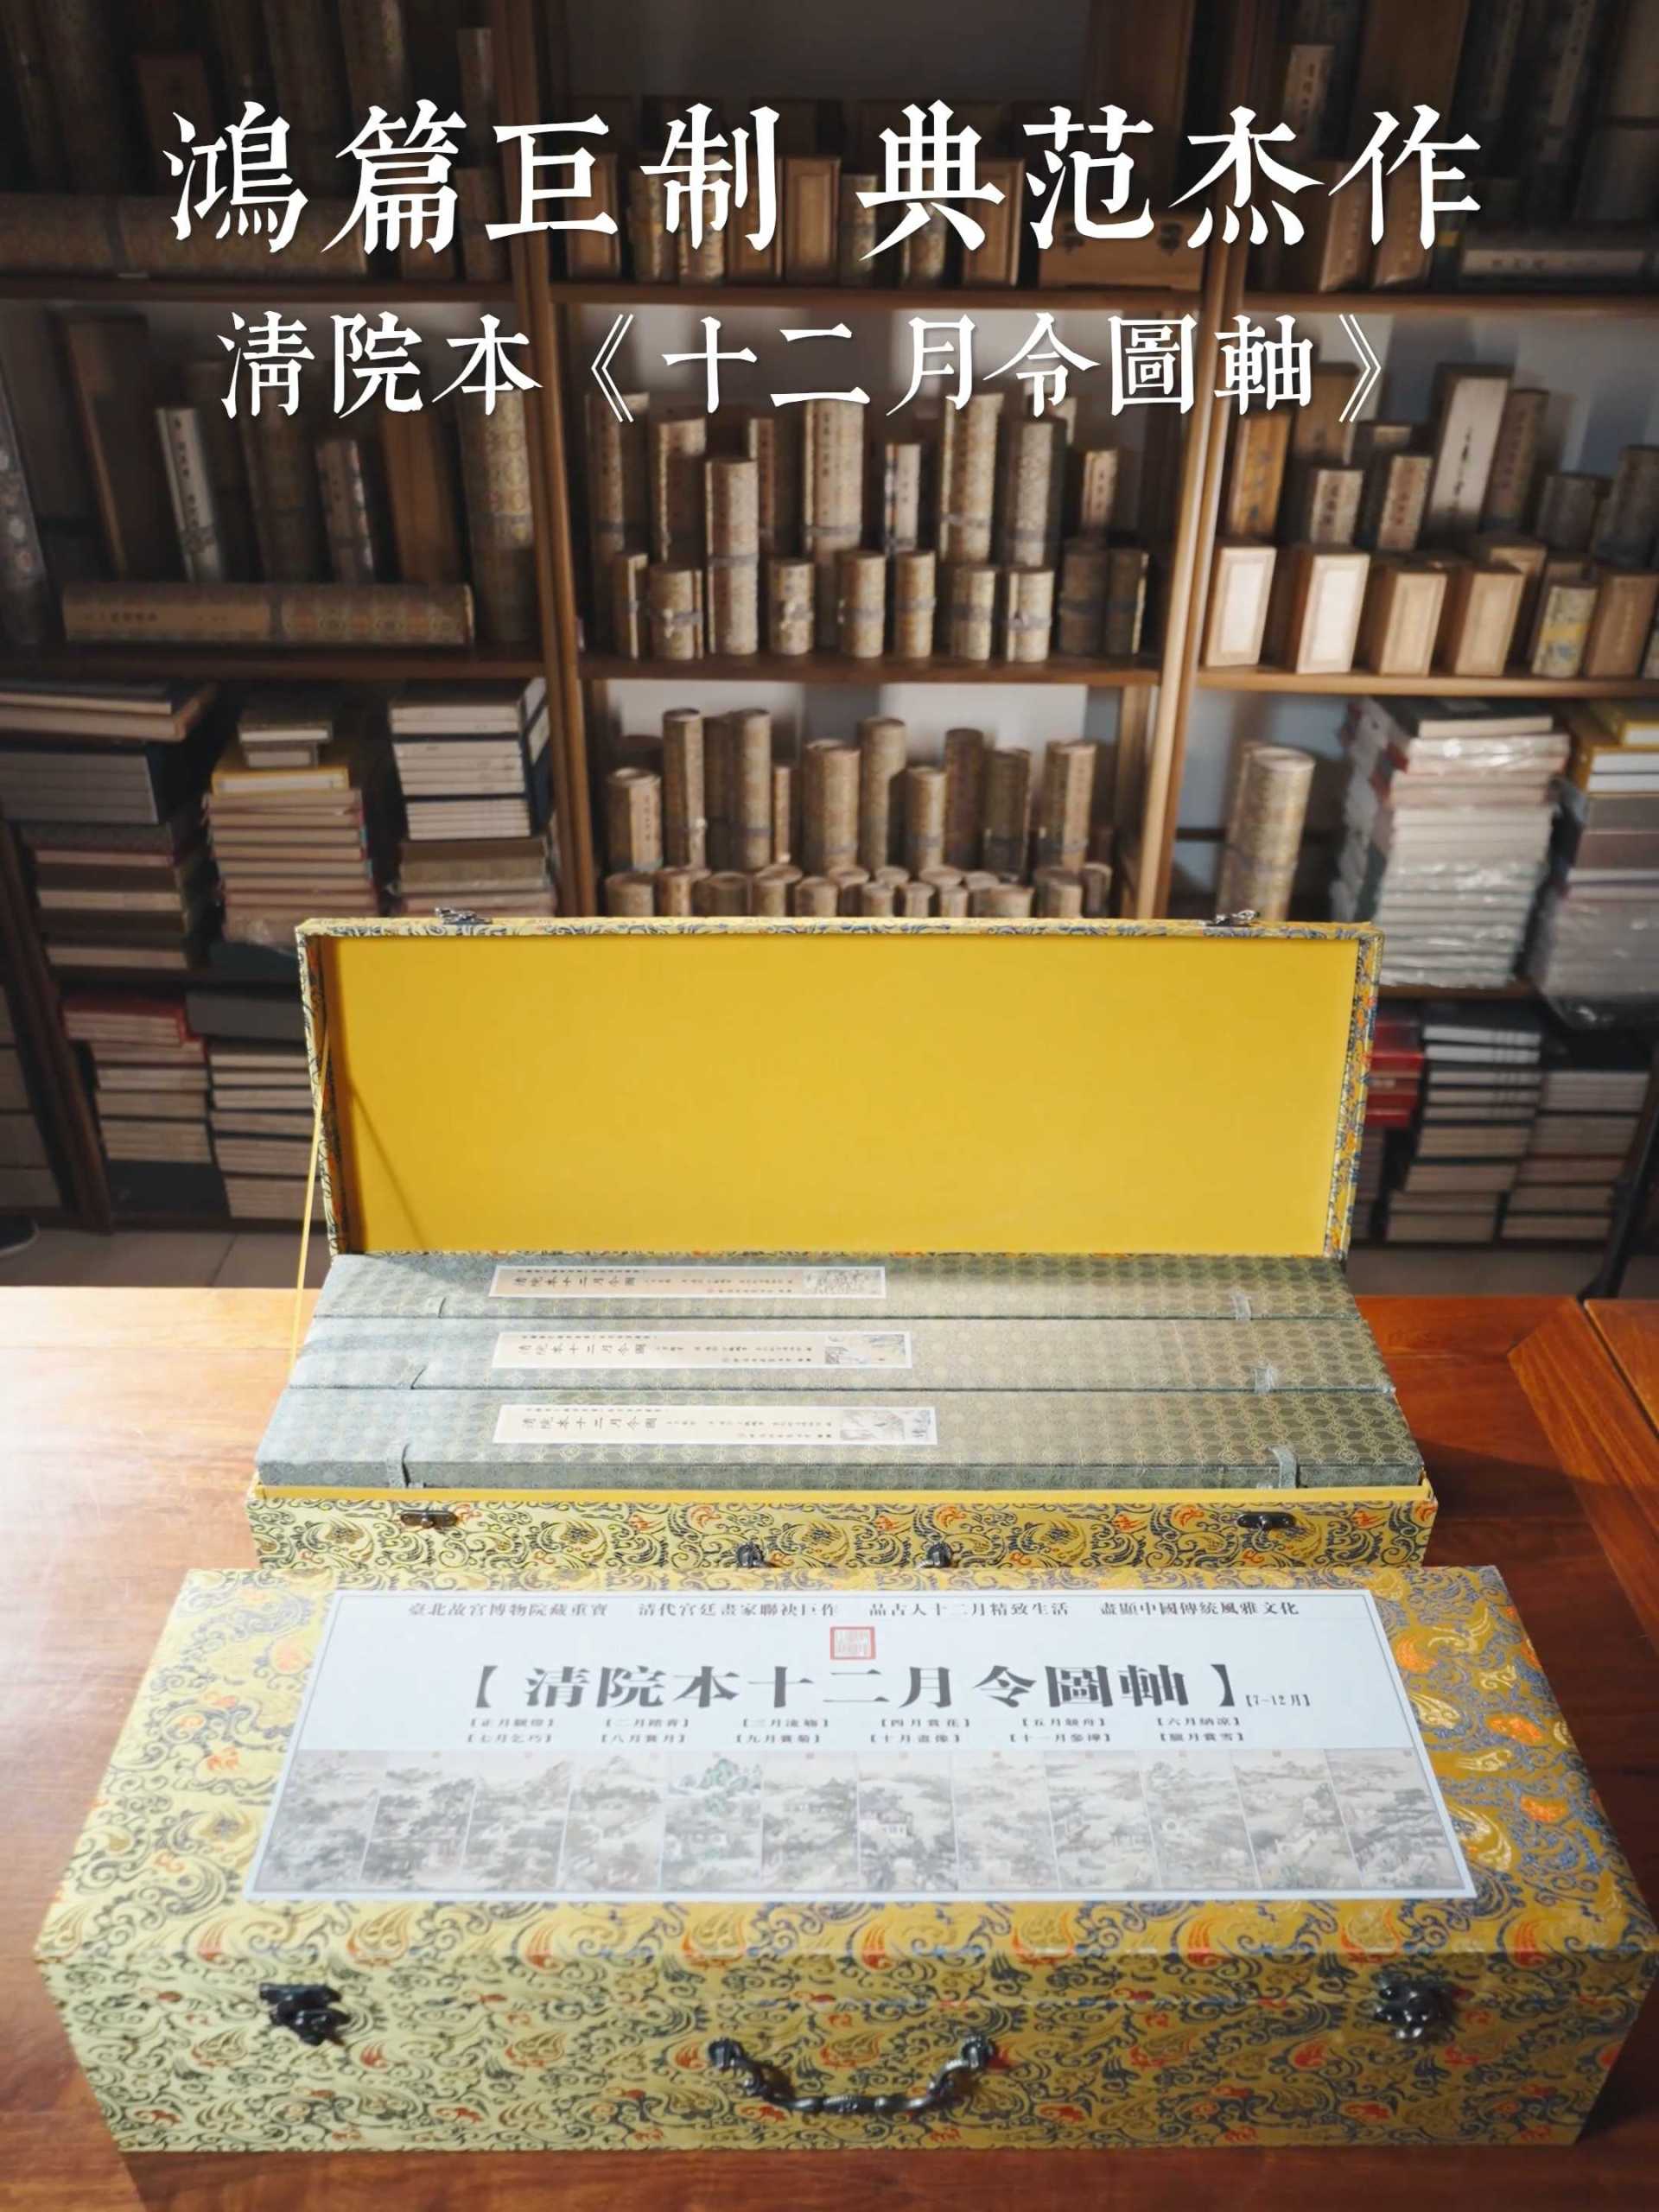 中国传统书法字画展示 - 湖山书苑